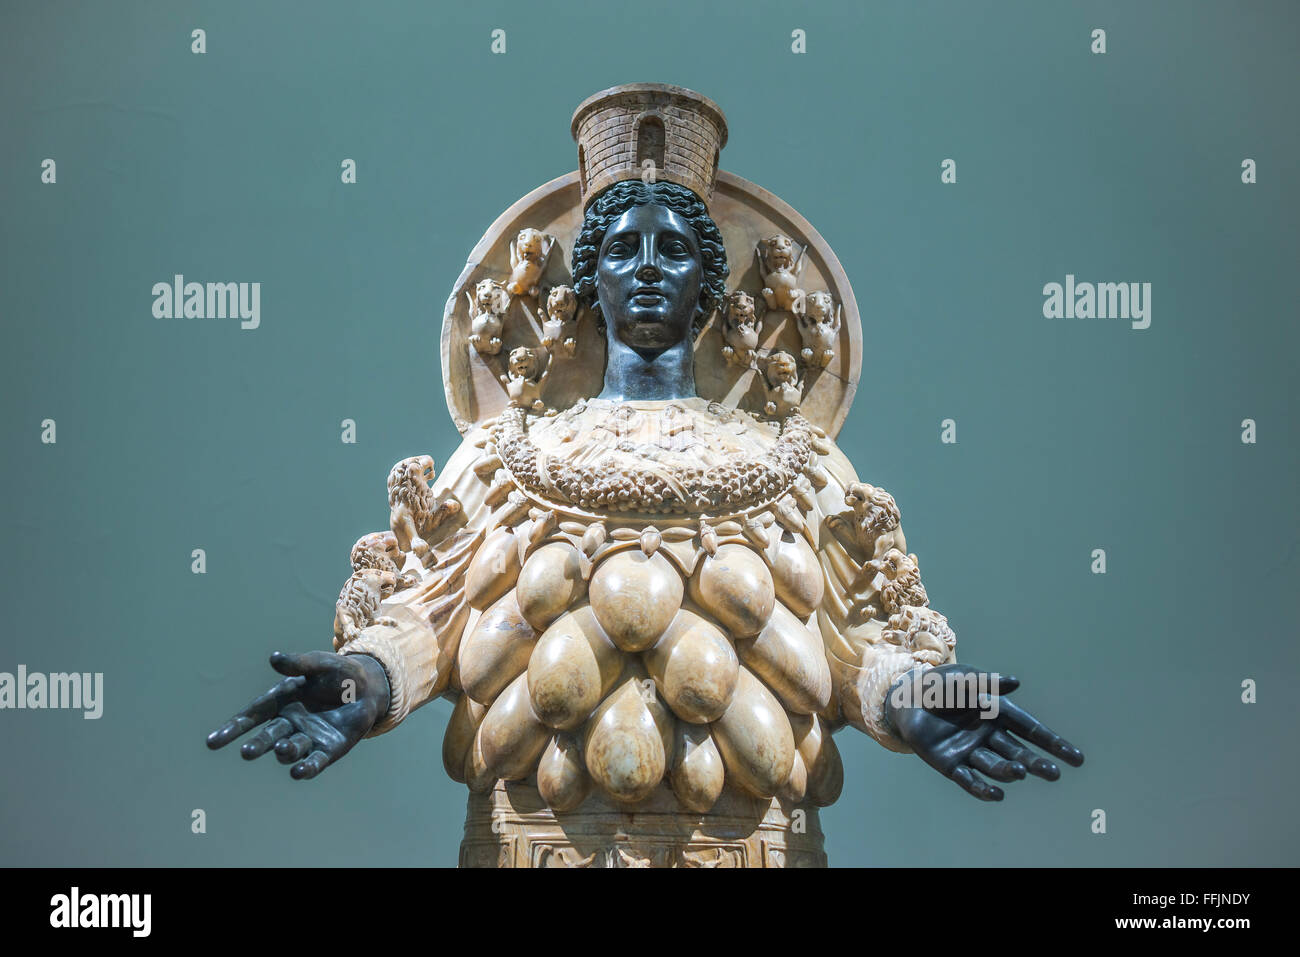 Estatua de Artemisa Museo arqueológico de Nápoles, vista de la estatua de Artemisa de Éfeso (siglo II DC), Museo Arqueológico Nazionale en Nápoles, Italia. Foto de stock